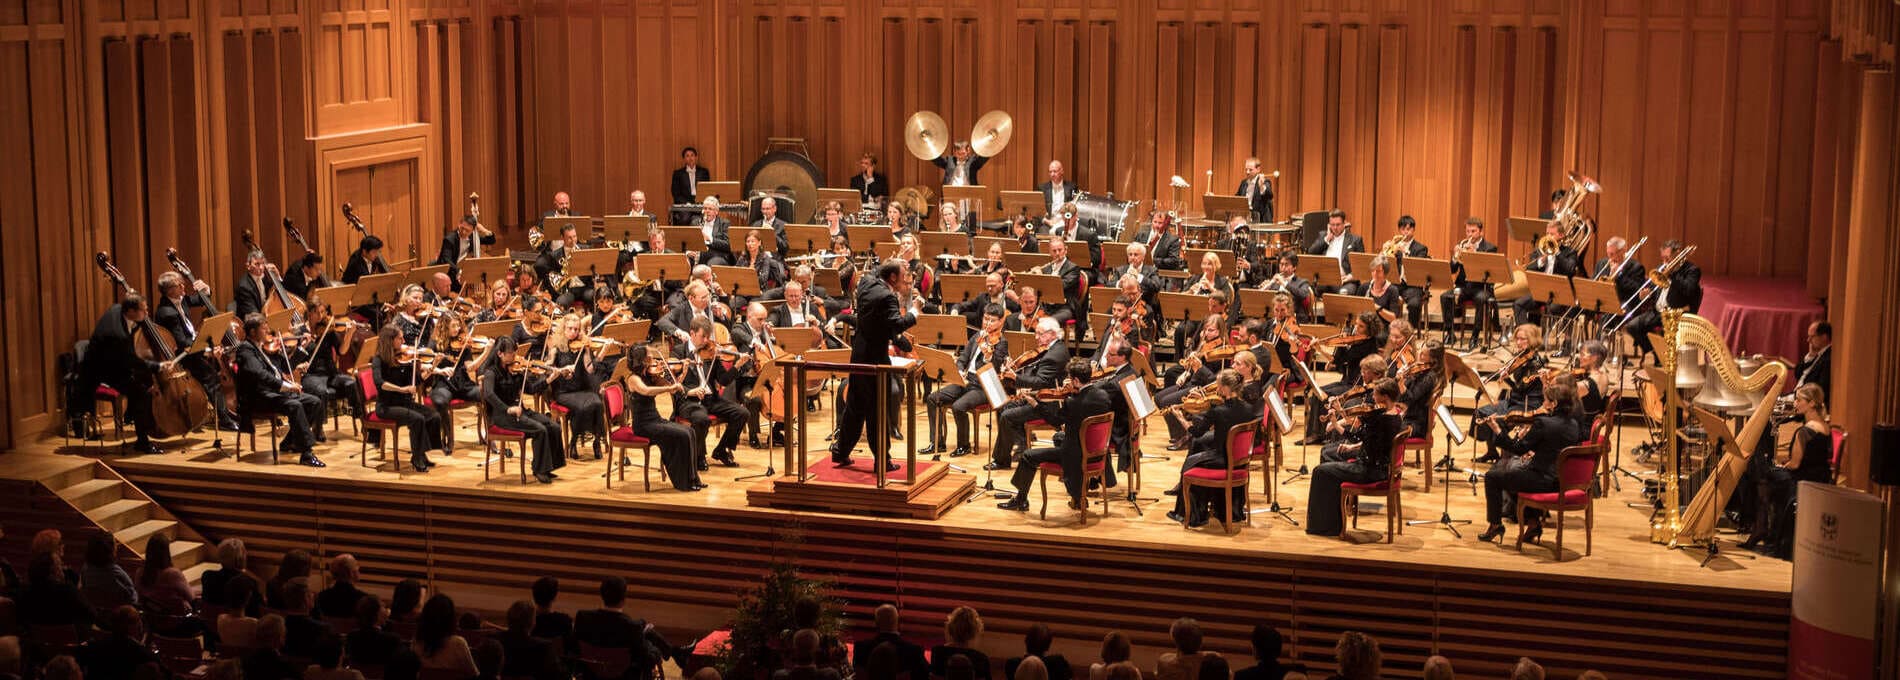 Gustav Mahler Musikwochen in Toblach - H&H Shop wünscht viel Spaß